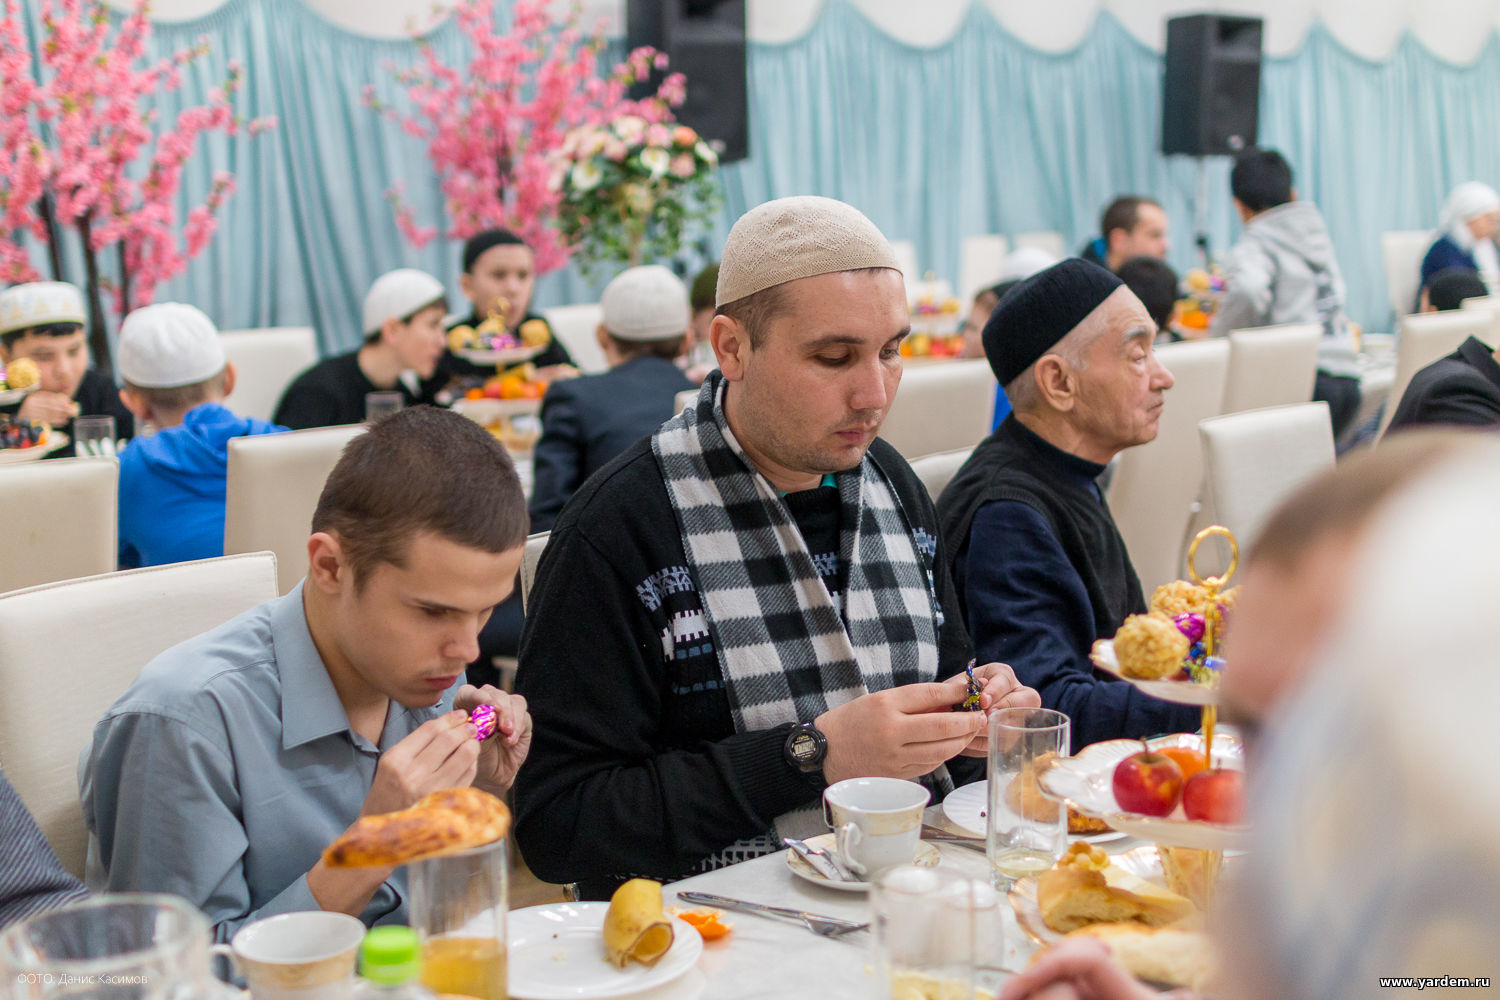 В мечети "Ярдэм" руководство магазина "Планета одежды и обуви" провели благотворительный ужин для незрячих. Общие новости